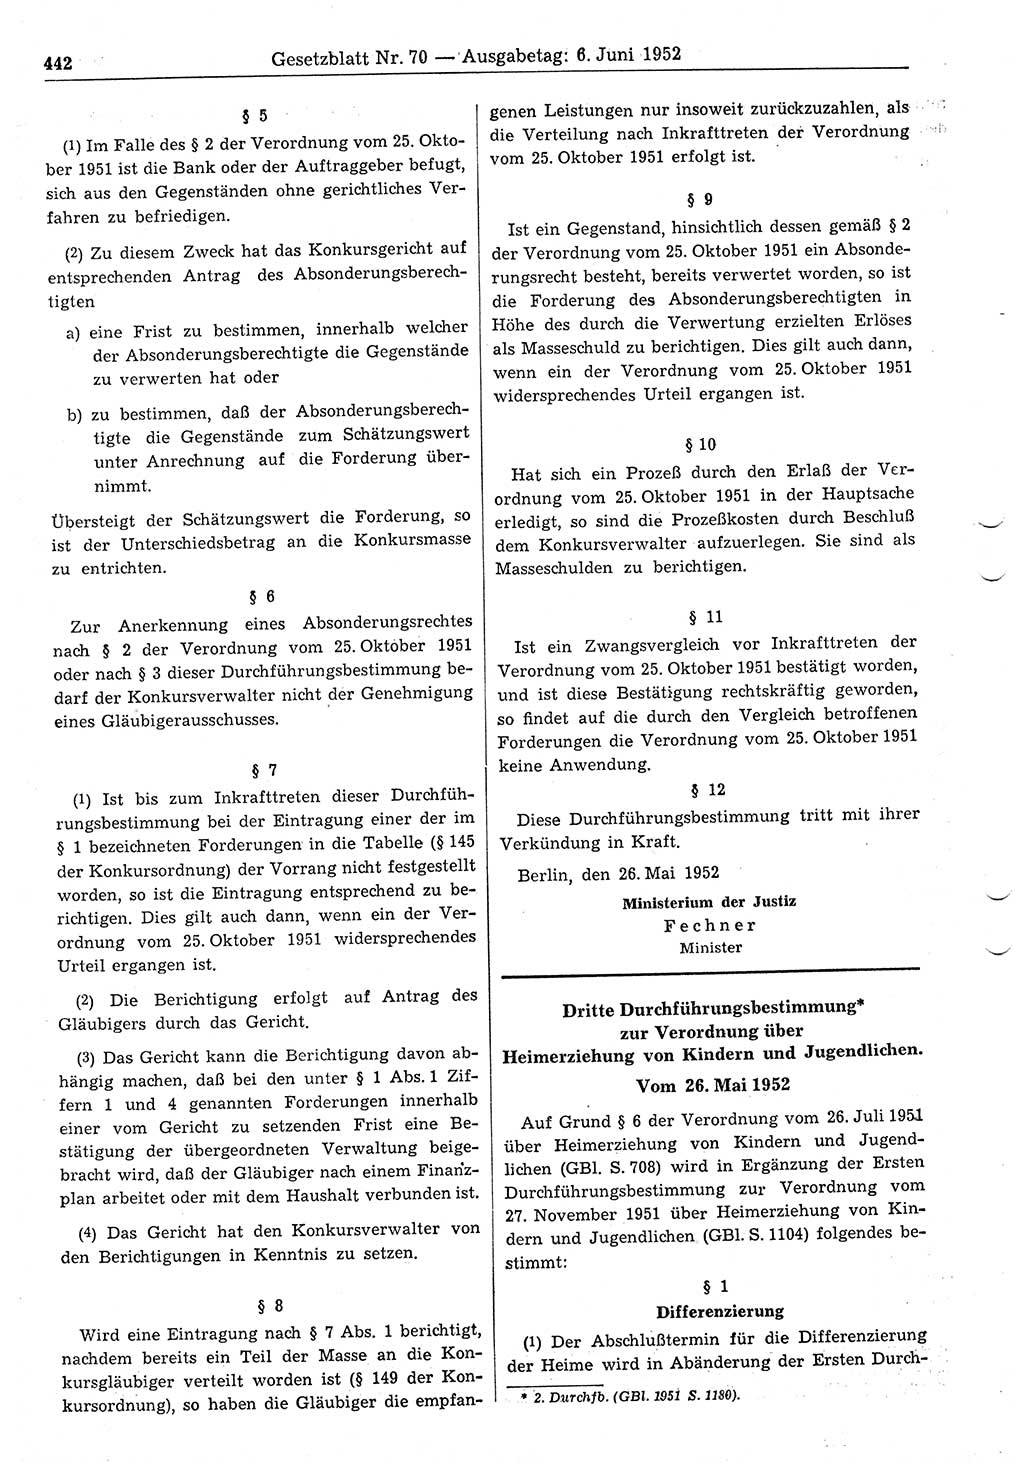 Gesetzblatt (GBl.) der Deutschen Demokratischen Republik (DDR) 1952, Seite 442 (GBl. DDR 1952, S. 442)